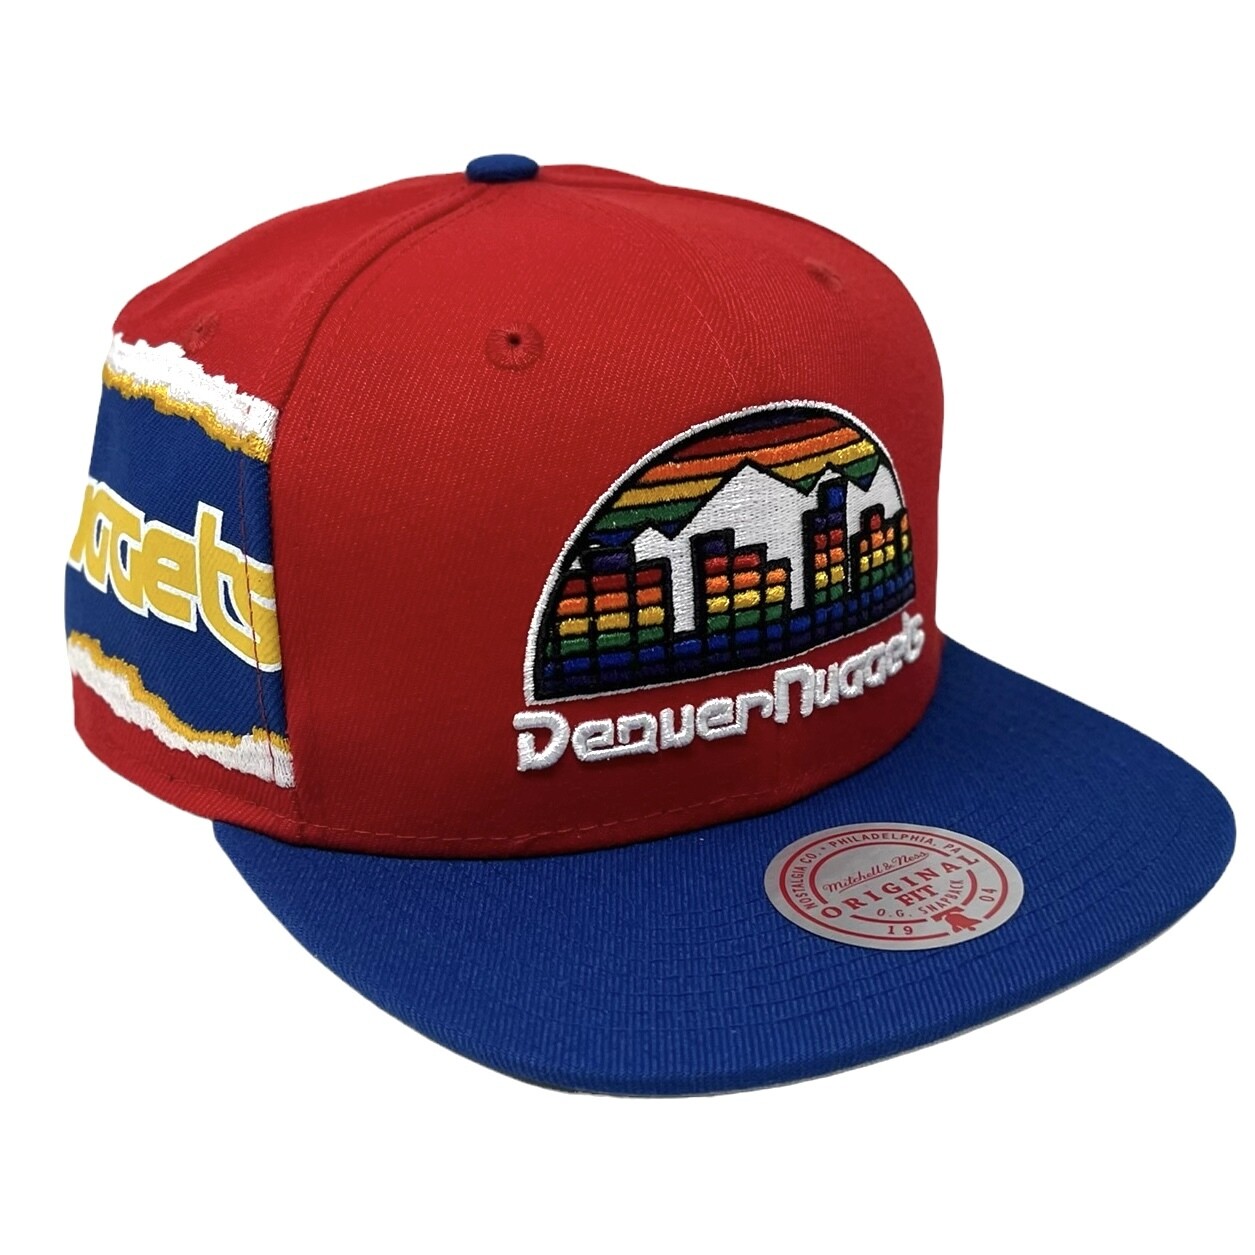 Denver Nuggets Hats in Denver Nuggets Team Shop 